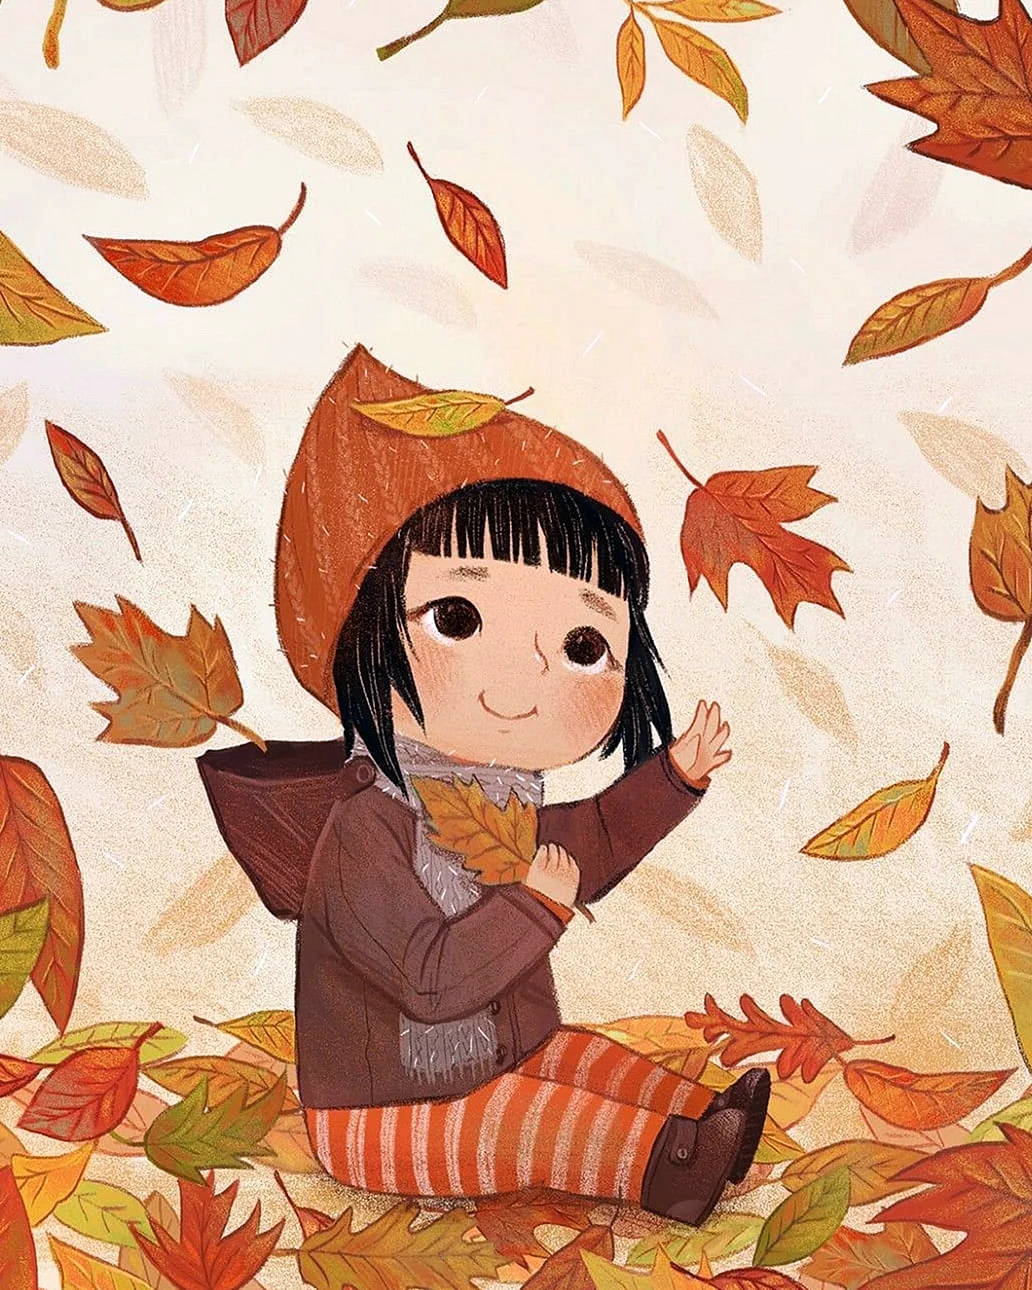 Осень иллюстрации